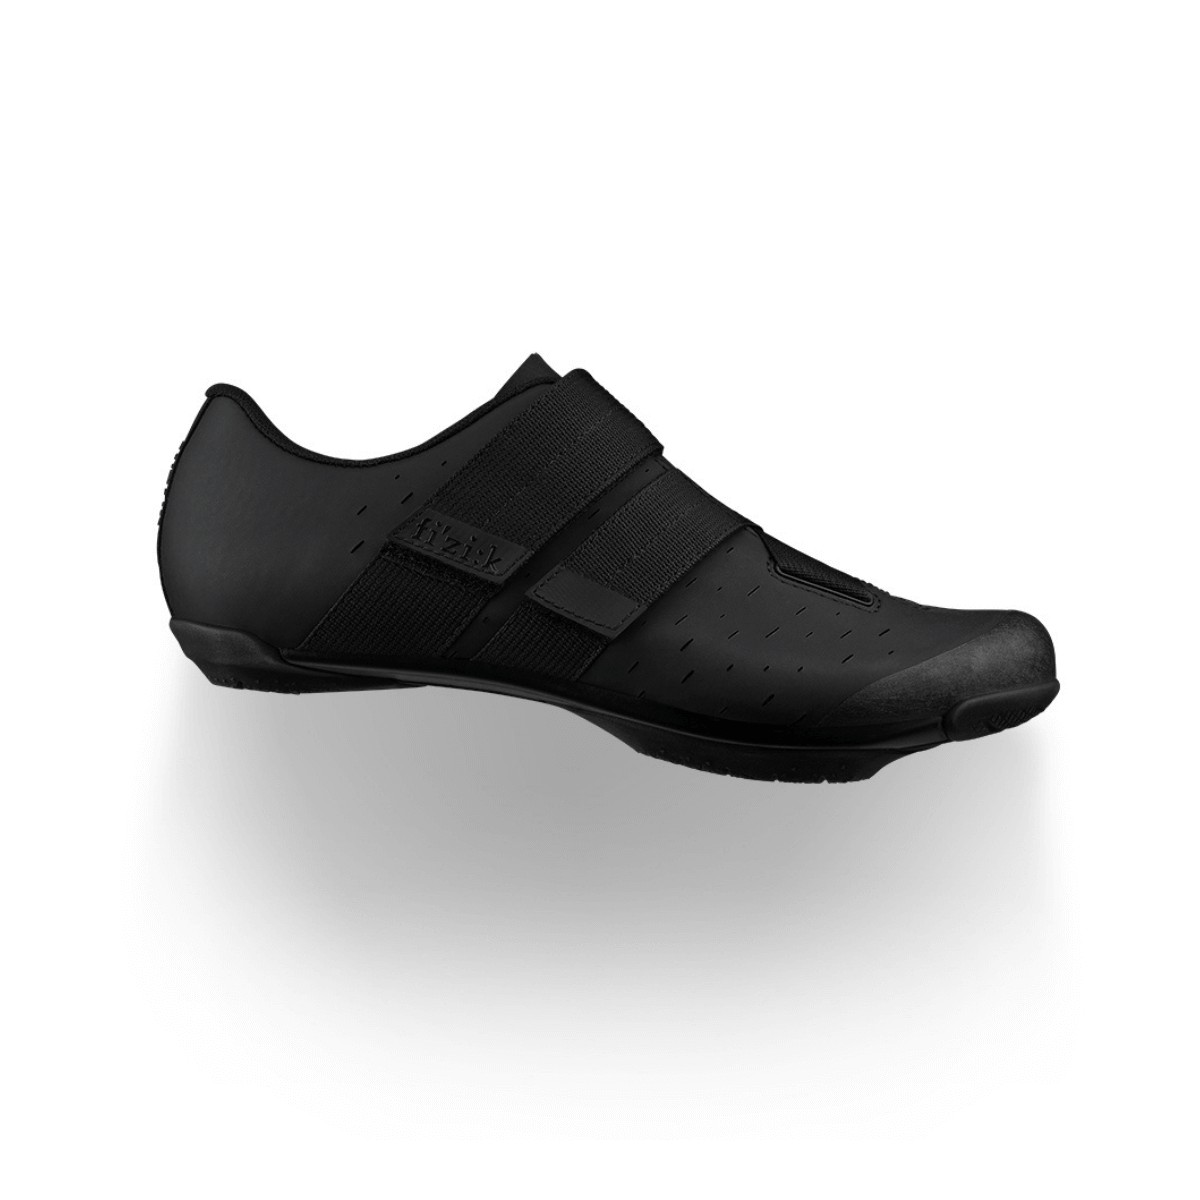 Chaussures Fizik Terra X4 Powerstrap Noir